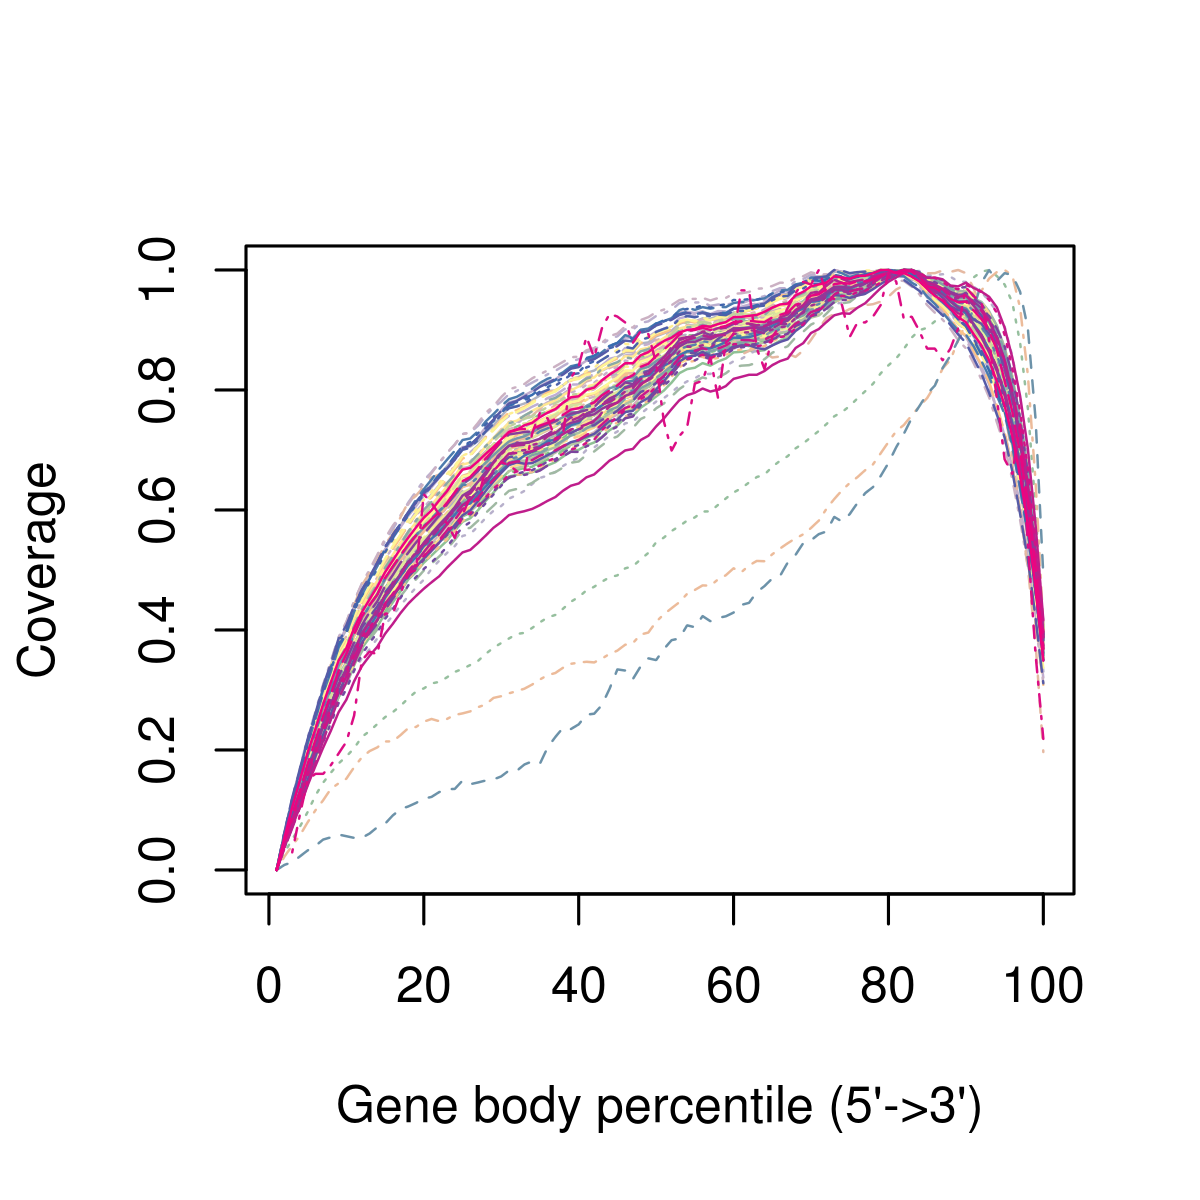 Ví dụ về độ lệch 3' trong phạm vi bao phủ của cơ thể gen, sau khi căn chỉnh trình tự đọc theo bản phiên mã. Mỗi dòng biểu thị mức độ bao phủ trung bình trên tất cả các gen trong một tế bào. Trong ví dụ này, ngoài độ lệch 3' trên tất cả các ô, còn có ba ô trông giống như các ngoại lệ so với các ô còn lại và cần được loại bỏ khỏi phân tích tiếp theo. Đây có thể là những tế bào có chất lượng RNA kém hơn, ví dụ do bị thoái hóa.